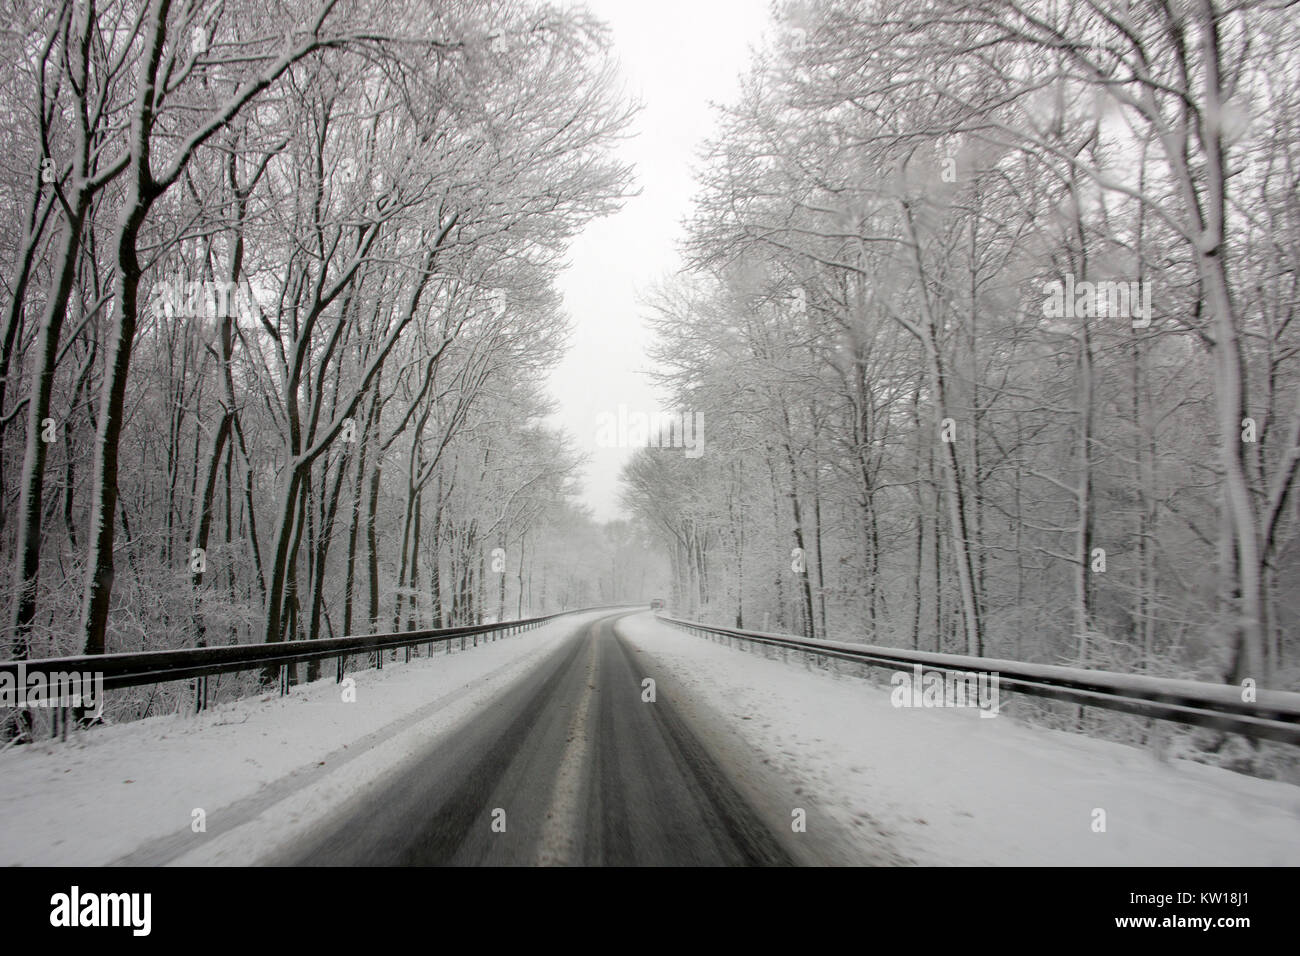 Autoroute sortie en Allemagne couverte de neige Banque D'Images